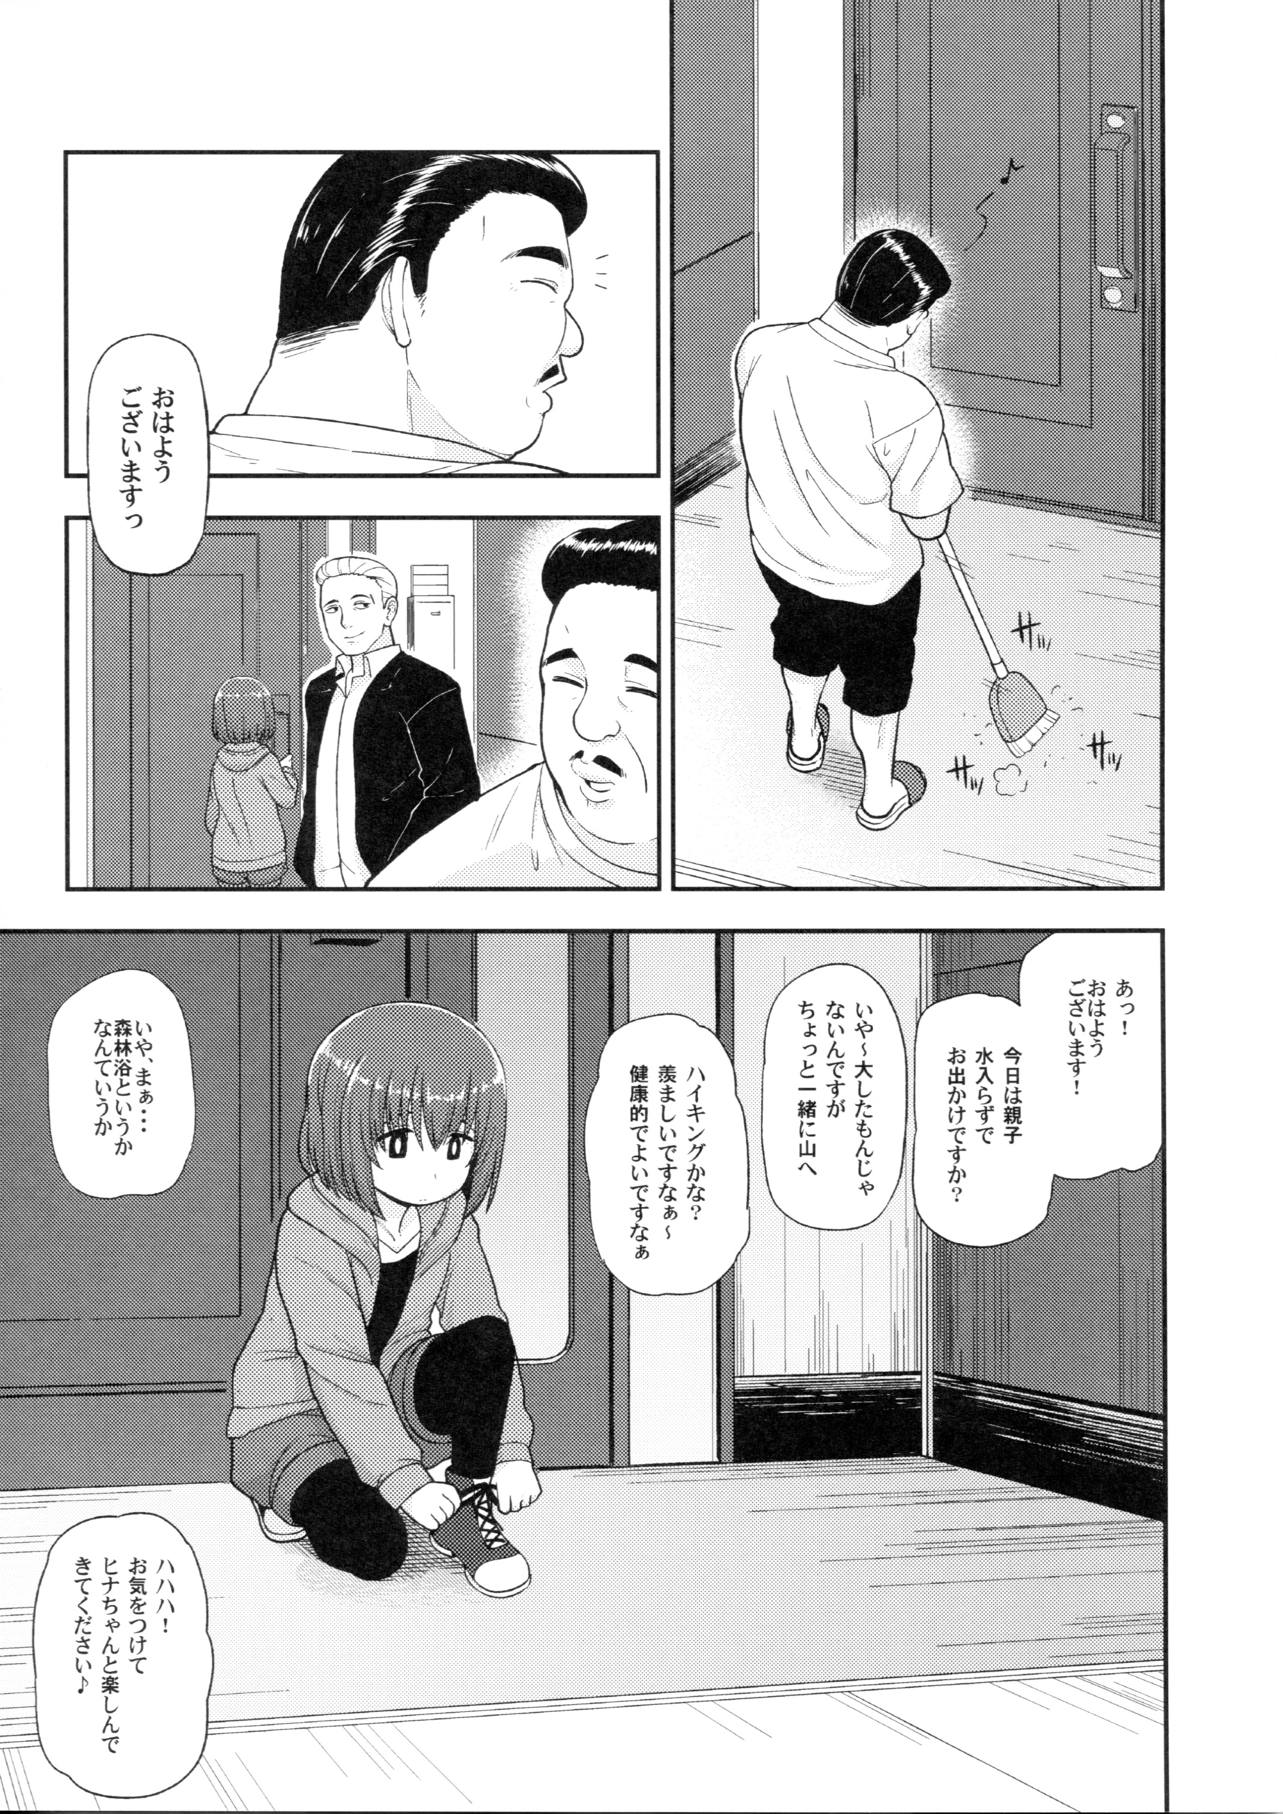 【ヒナまつり】女子中学生のヒナちゃんが新田に内緒でおじさんと援助交際するなんて…。の画像12枚目